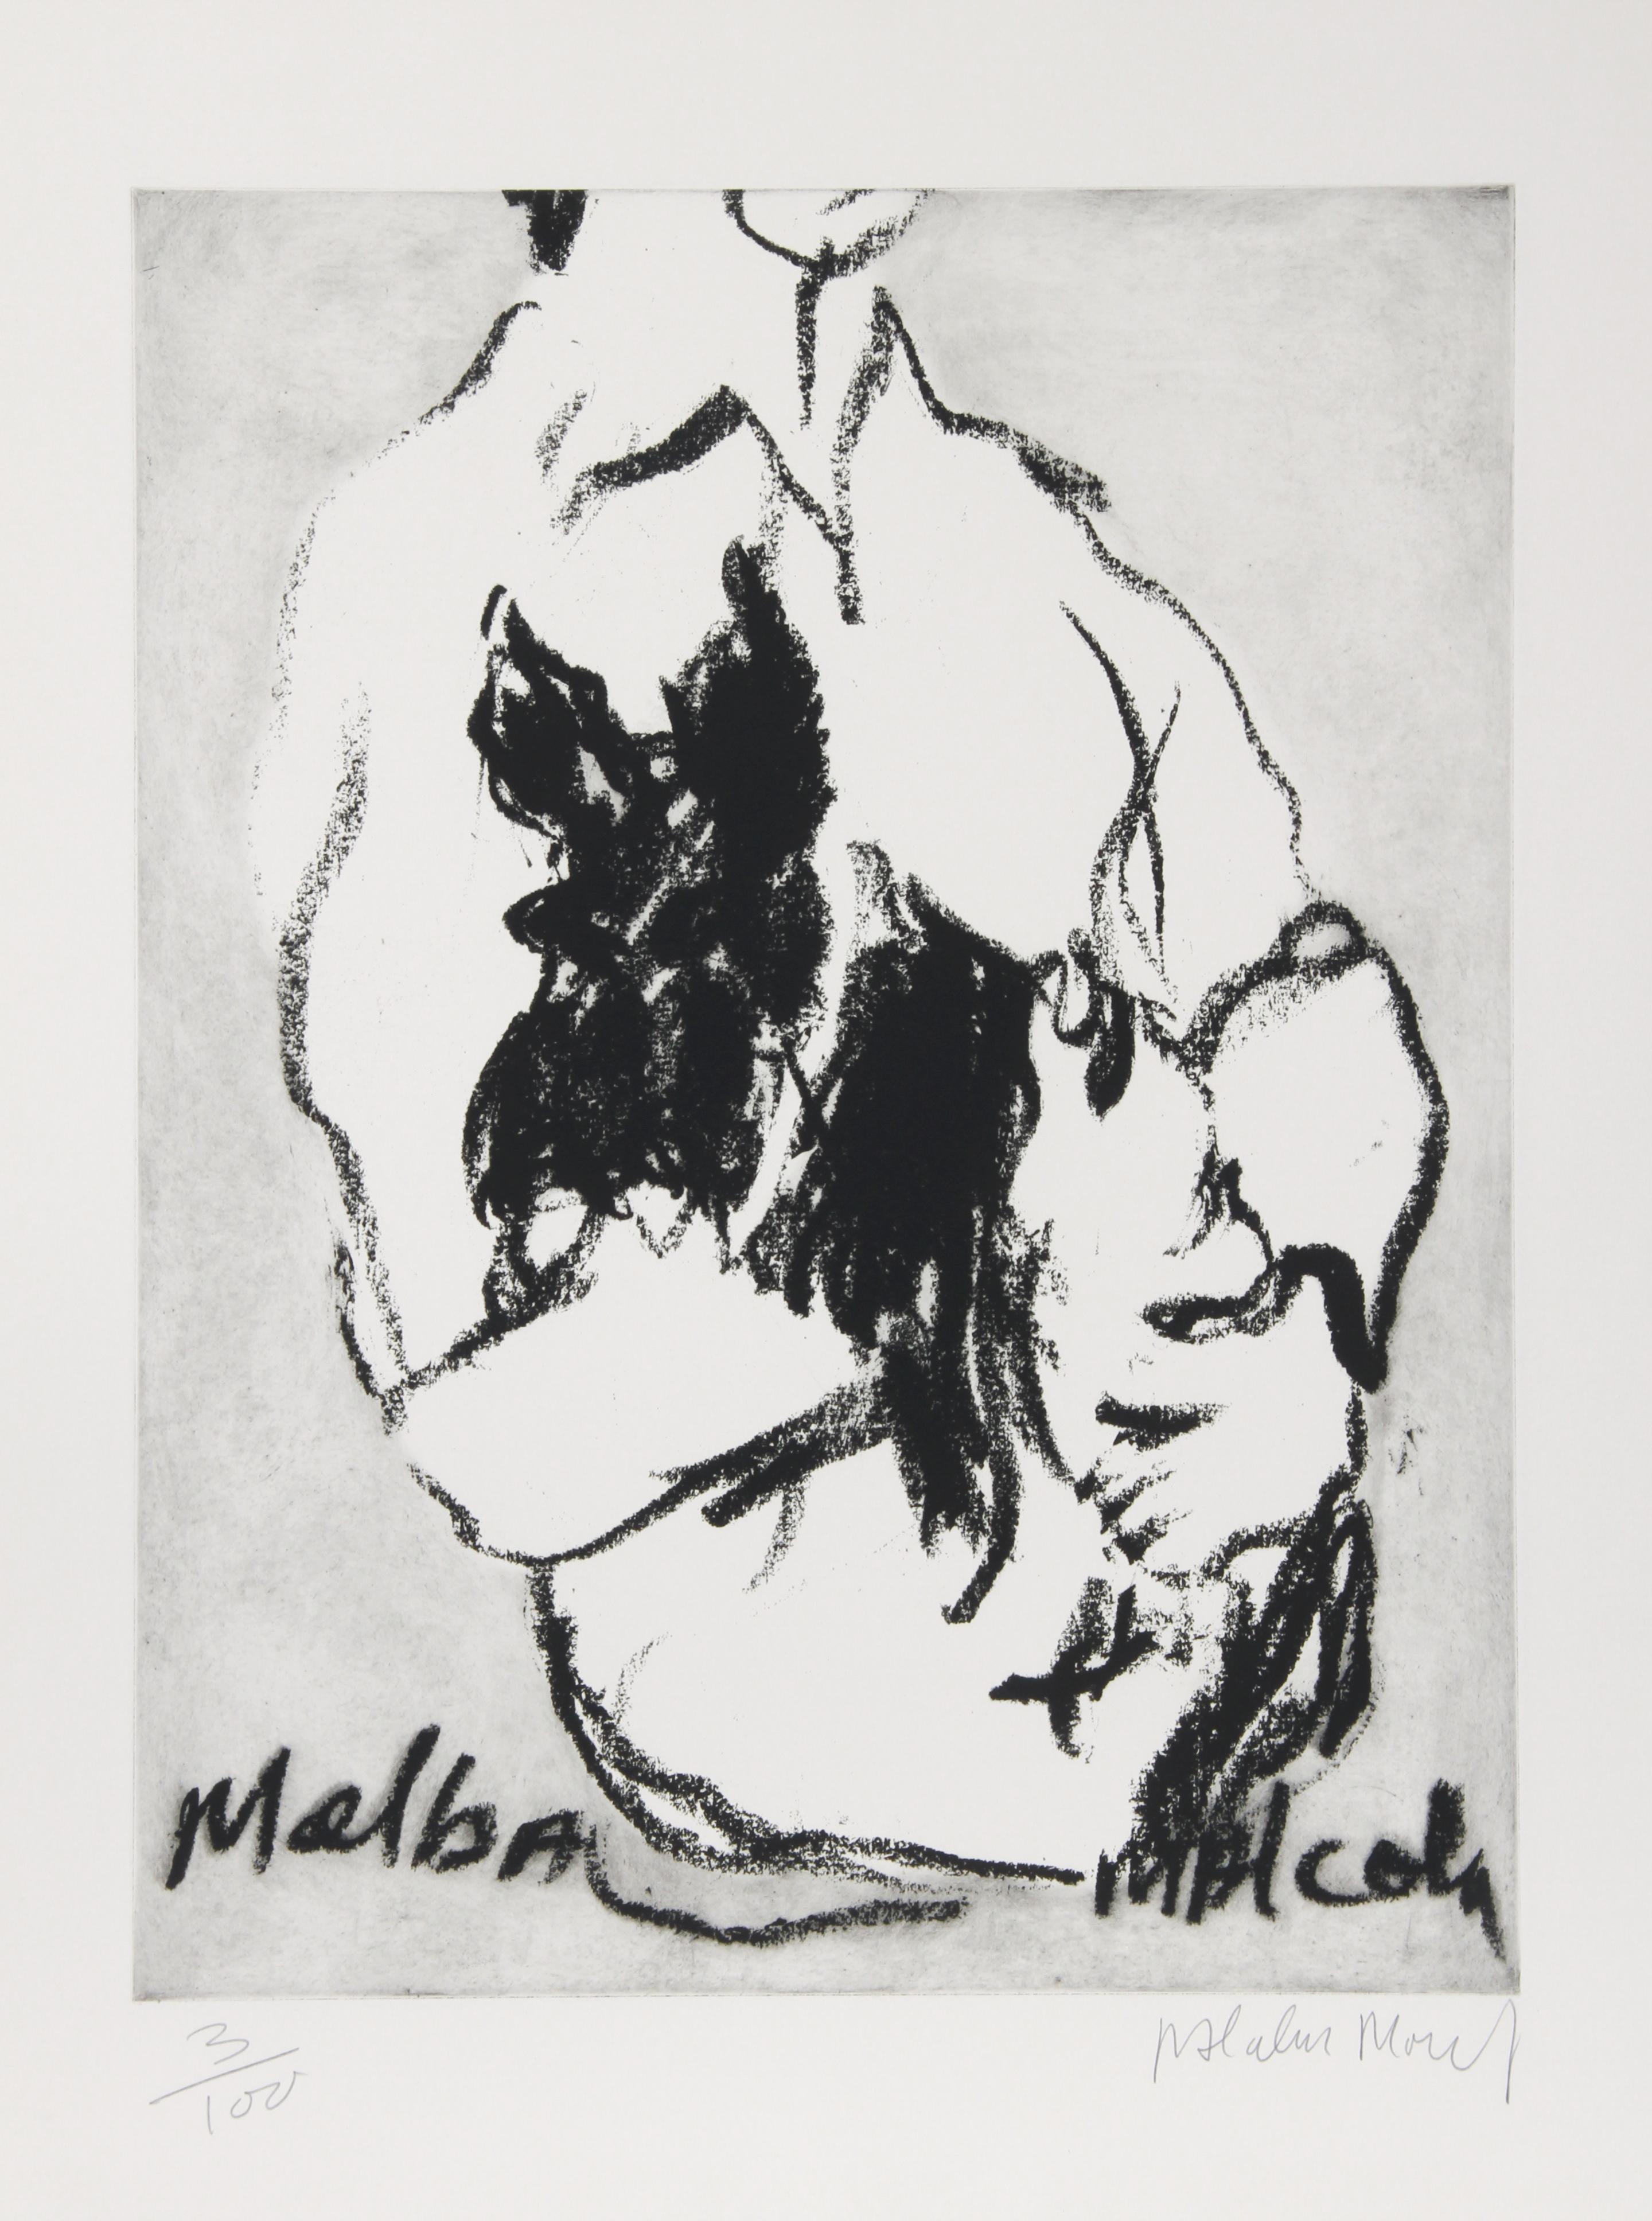 Artistics : Malcolm Morley, Britannique (1931 - 2018)
Titre : Melba, Malcolm 
Année : circa 1980
Moyen : Gravure, signée et numérotée au crayon
Edition : 100
Taille de l'image : 24 x 18 pouces 
Taille : 30 in. x 22 in. (76.2 cm x 55.88 cm)